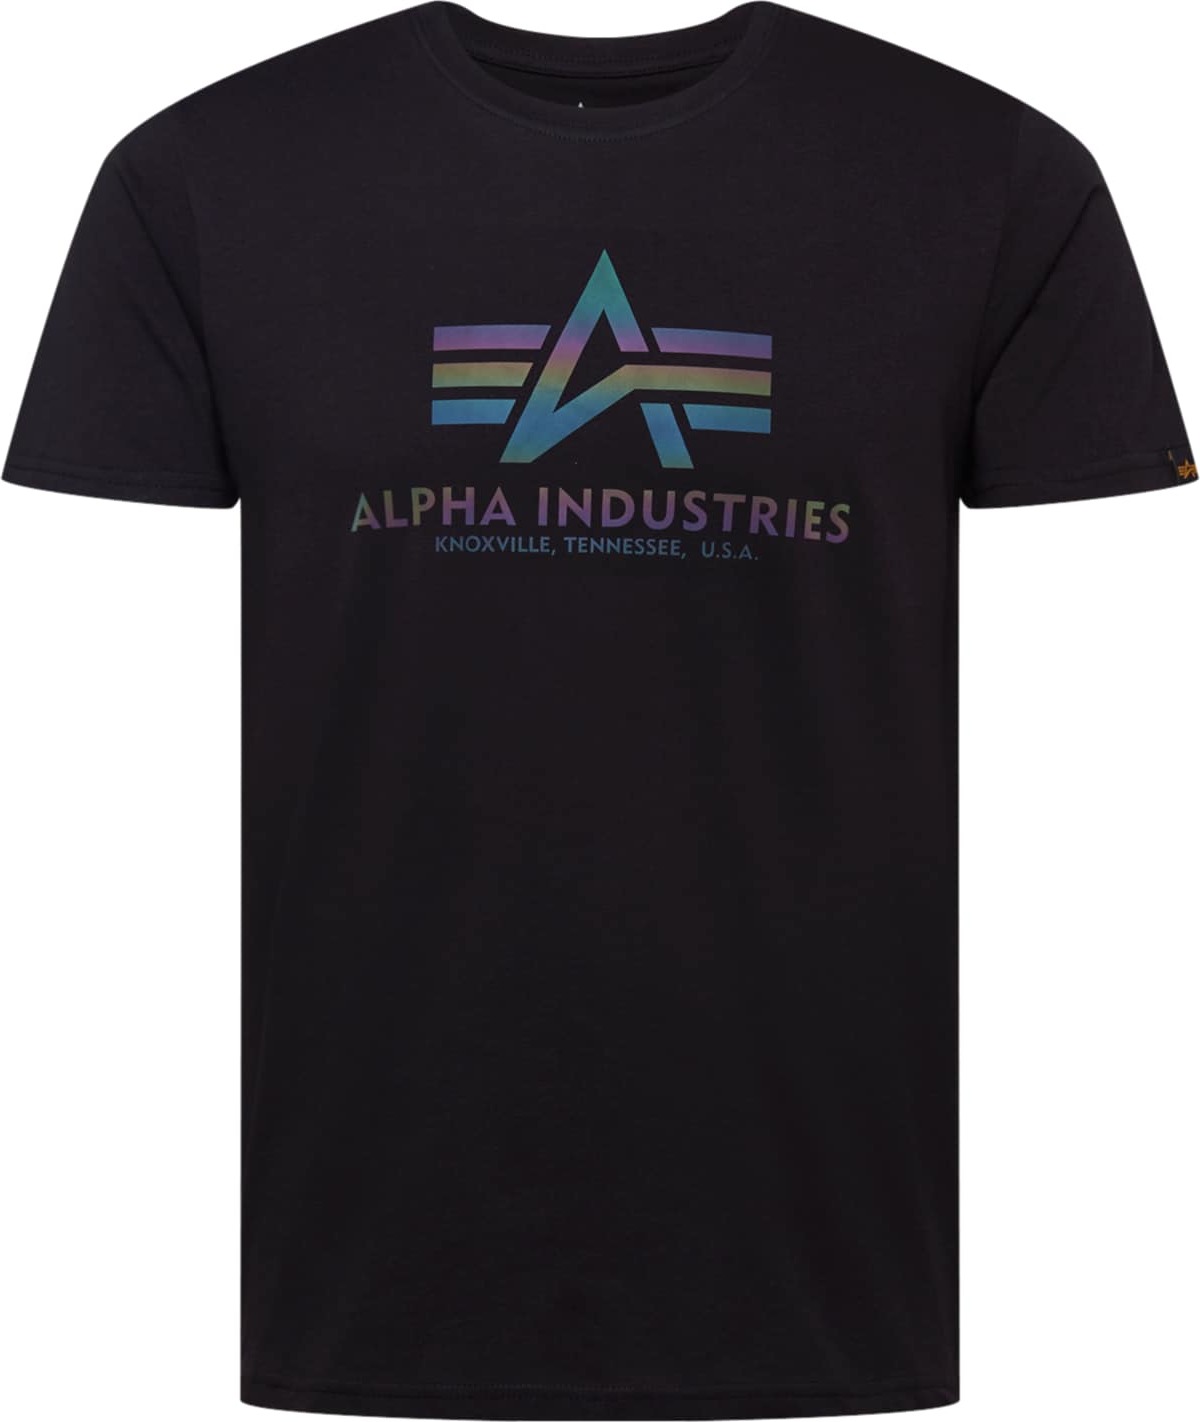 Tričko alpha industries modrá / zelená / tmavě fialová / oranžová / černá